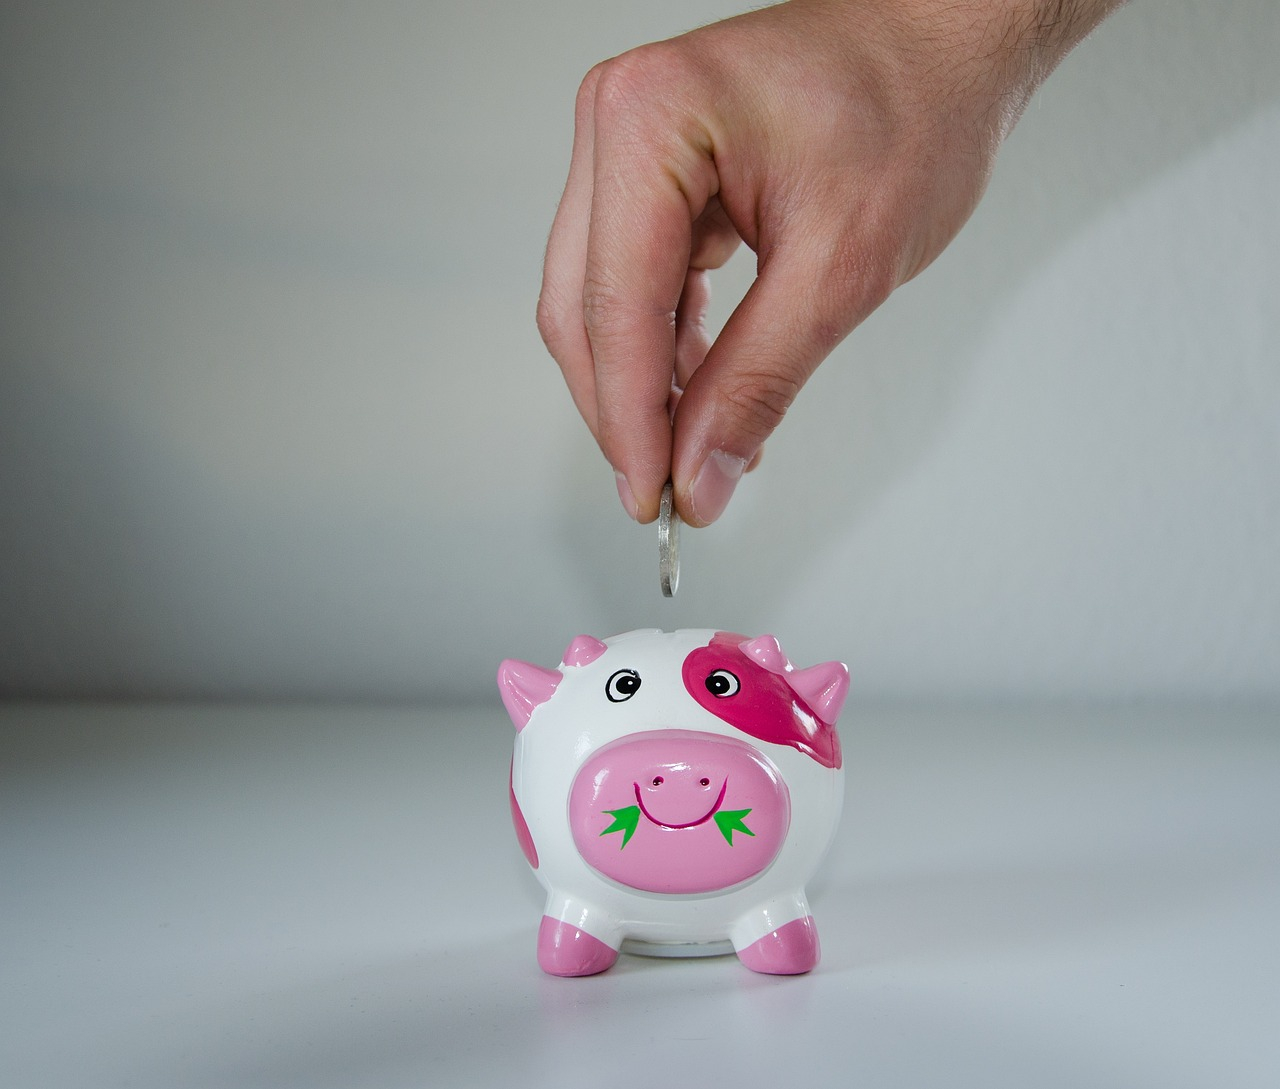 Una joven revela cómo logró ahorrar casi 8 mil dólares en un año: evitó gastar en 4 cosas